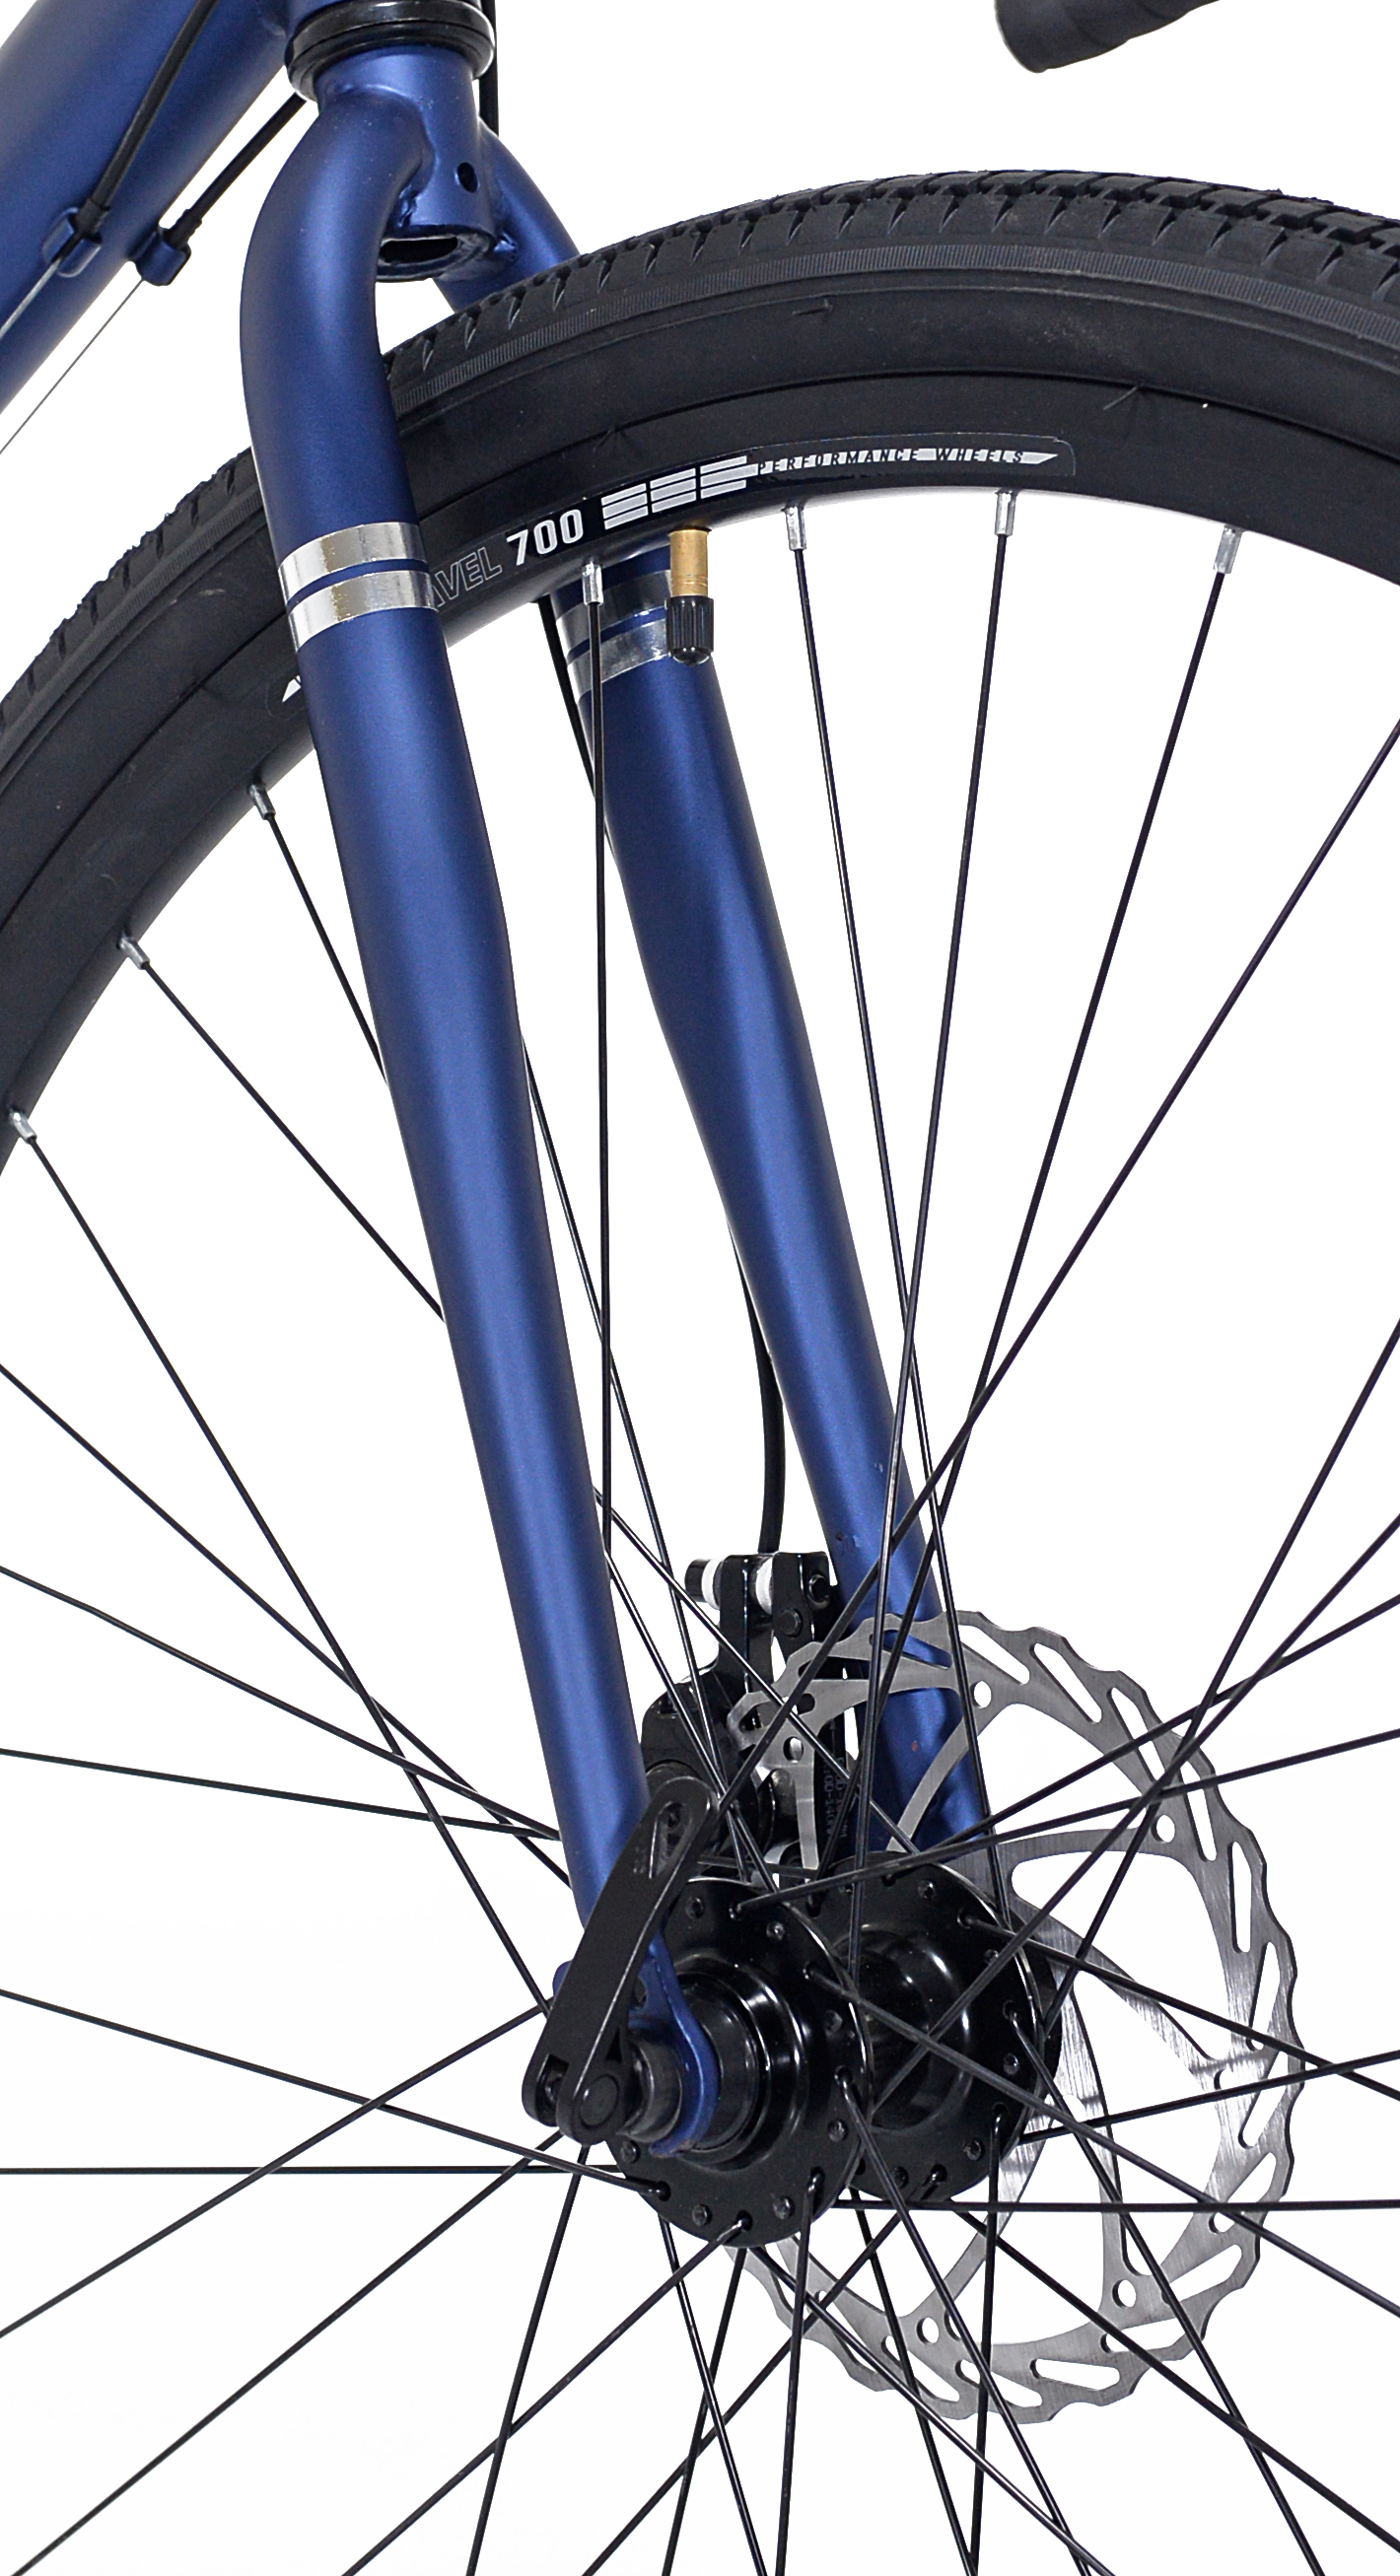 Kent Genesis 700C Bohe Men's Gravel Bike, Denim Blue - image 6 of 7